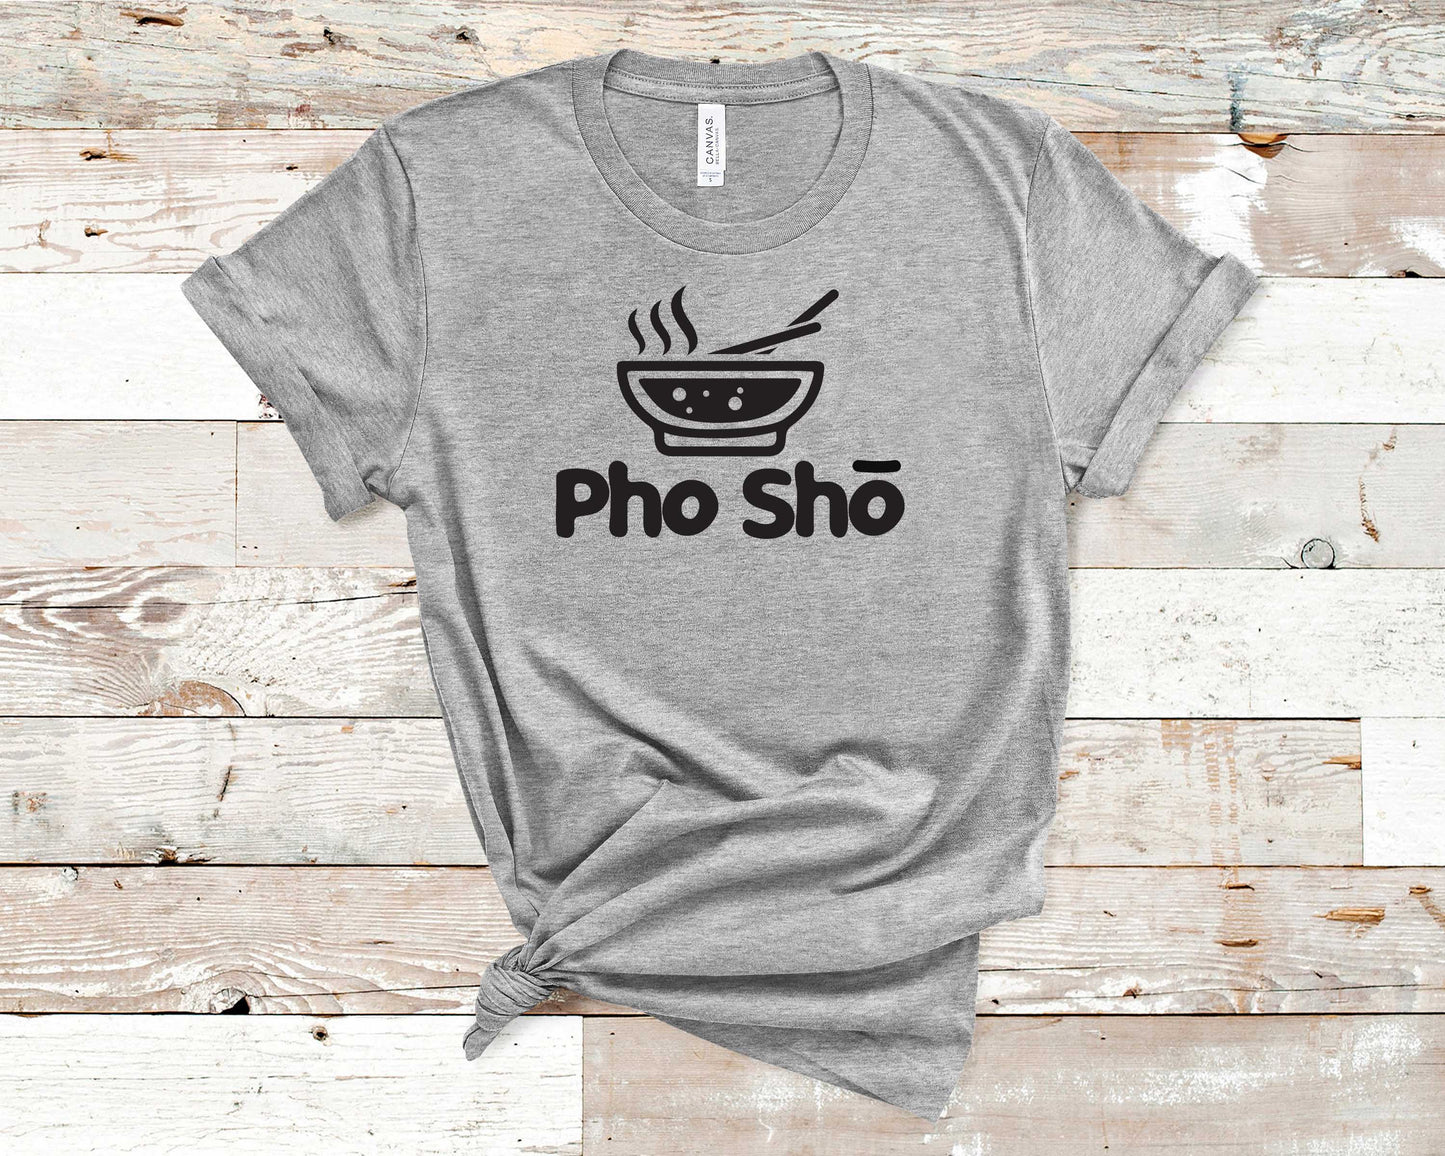 Pho Sho - Food